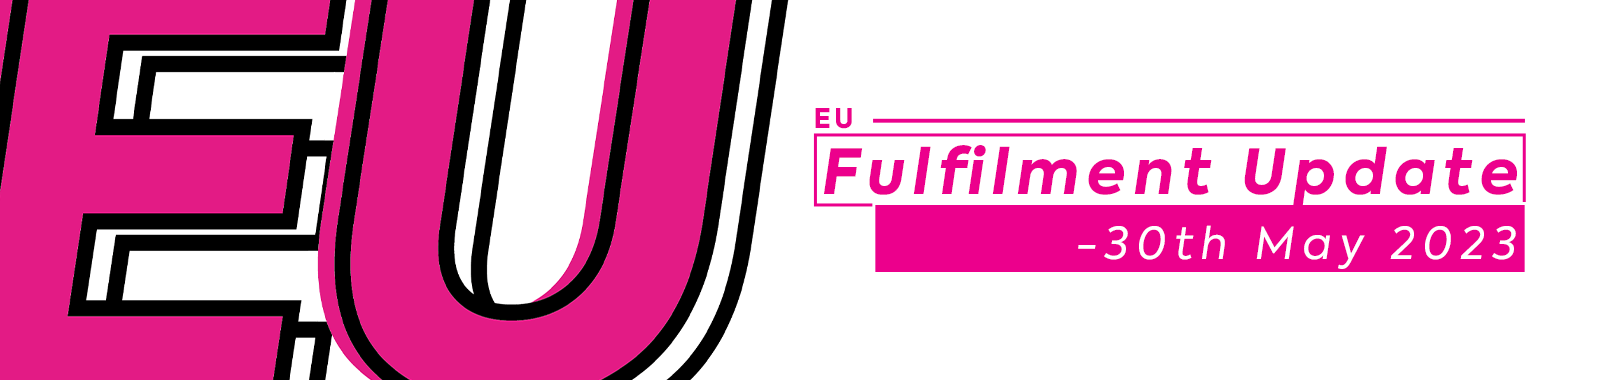 EU Fulfilment Update - 30th May